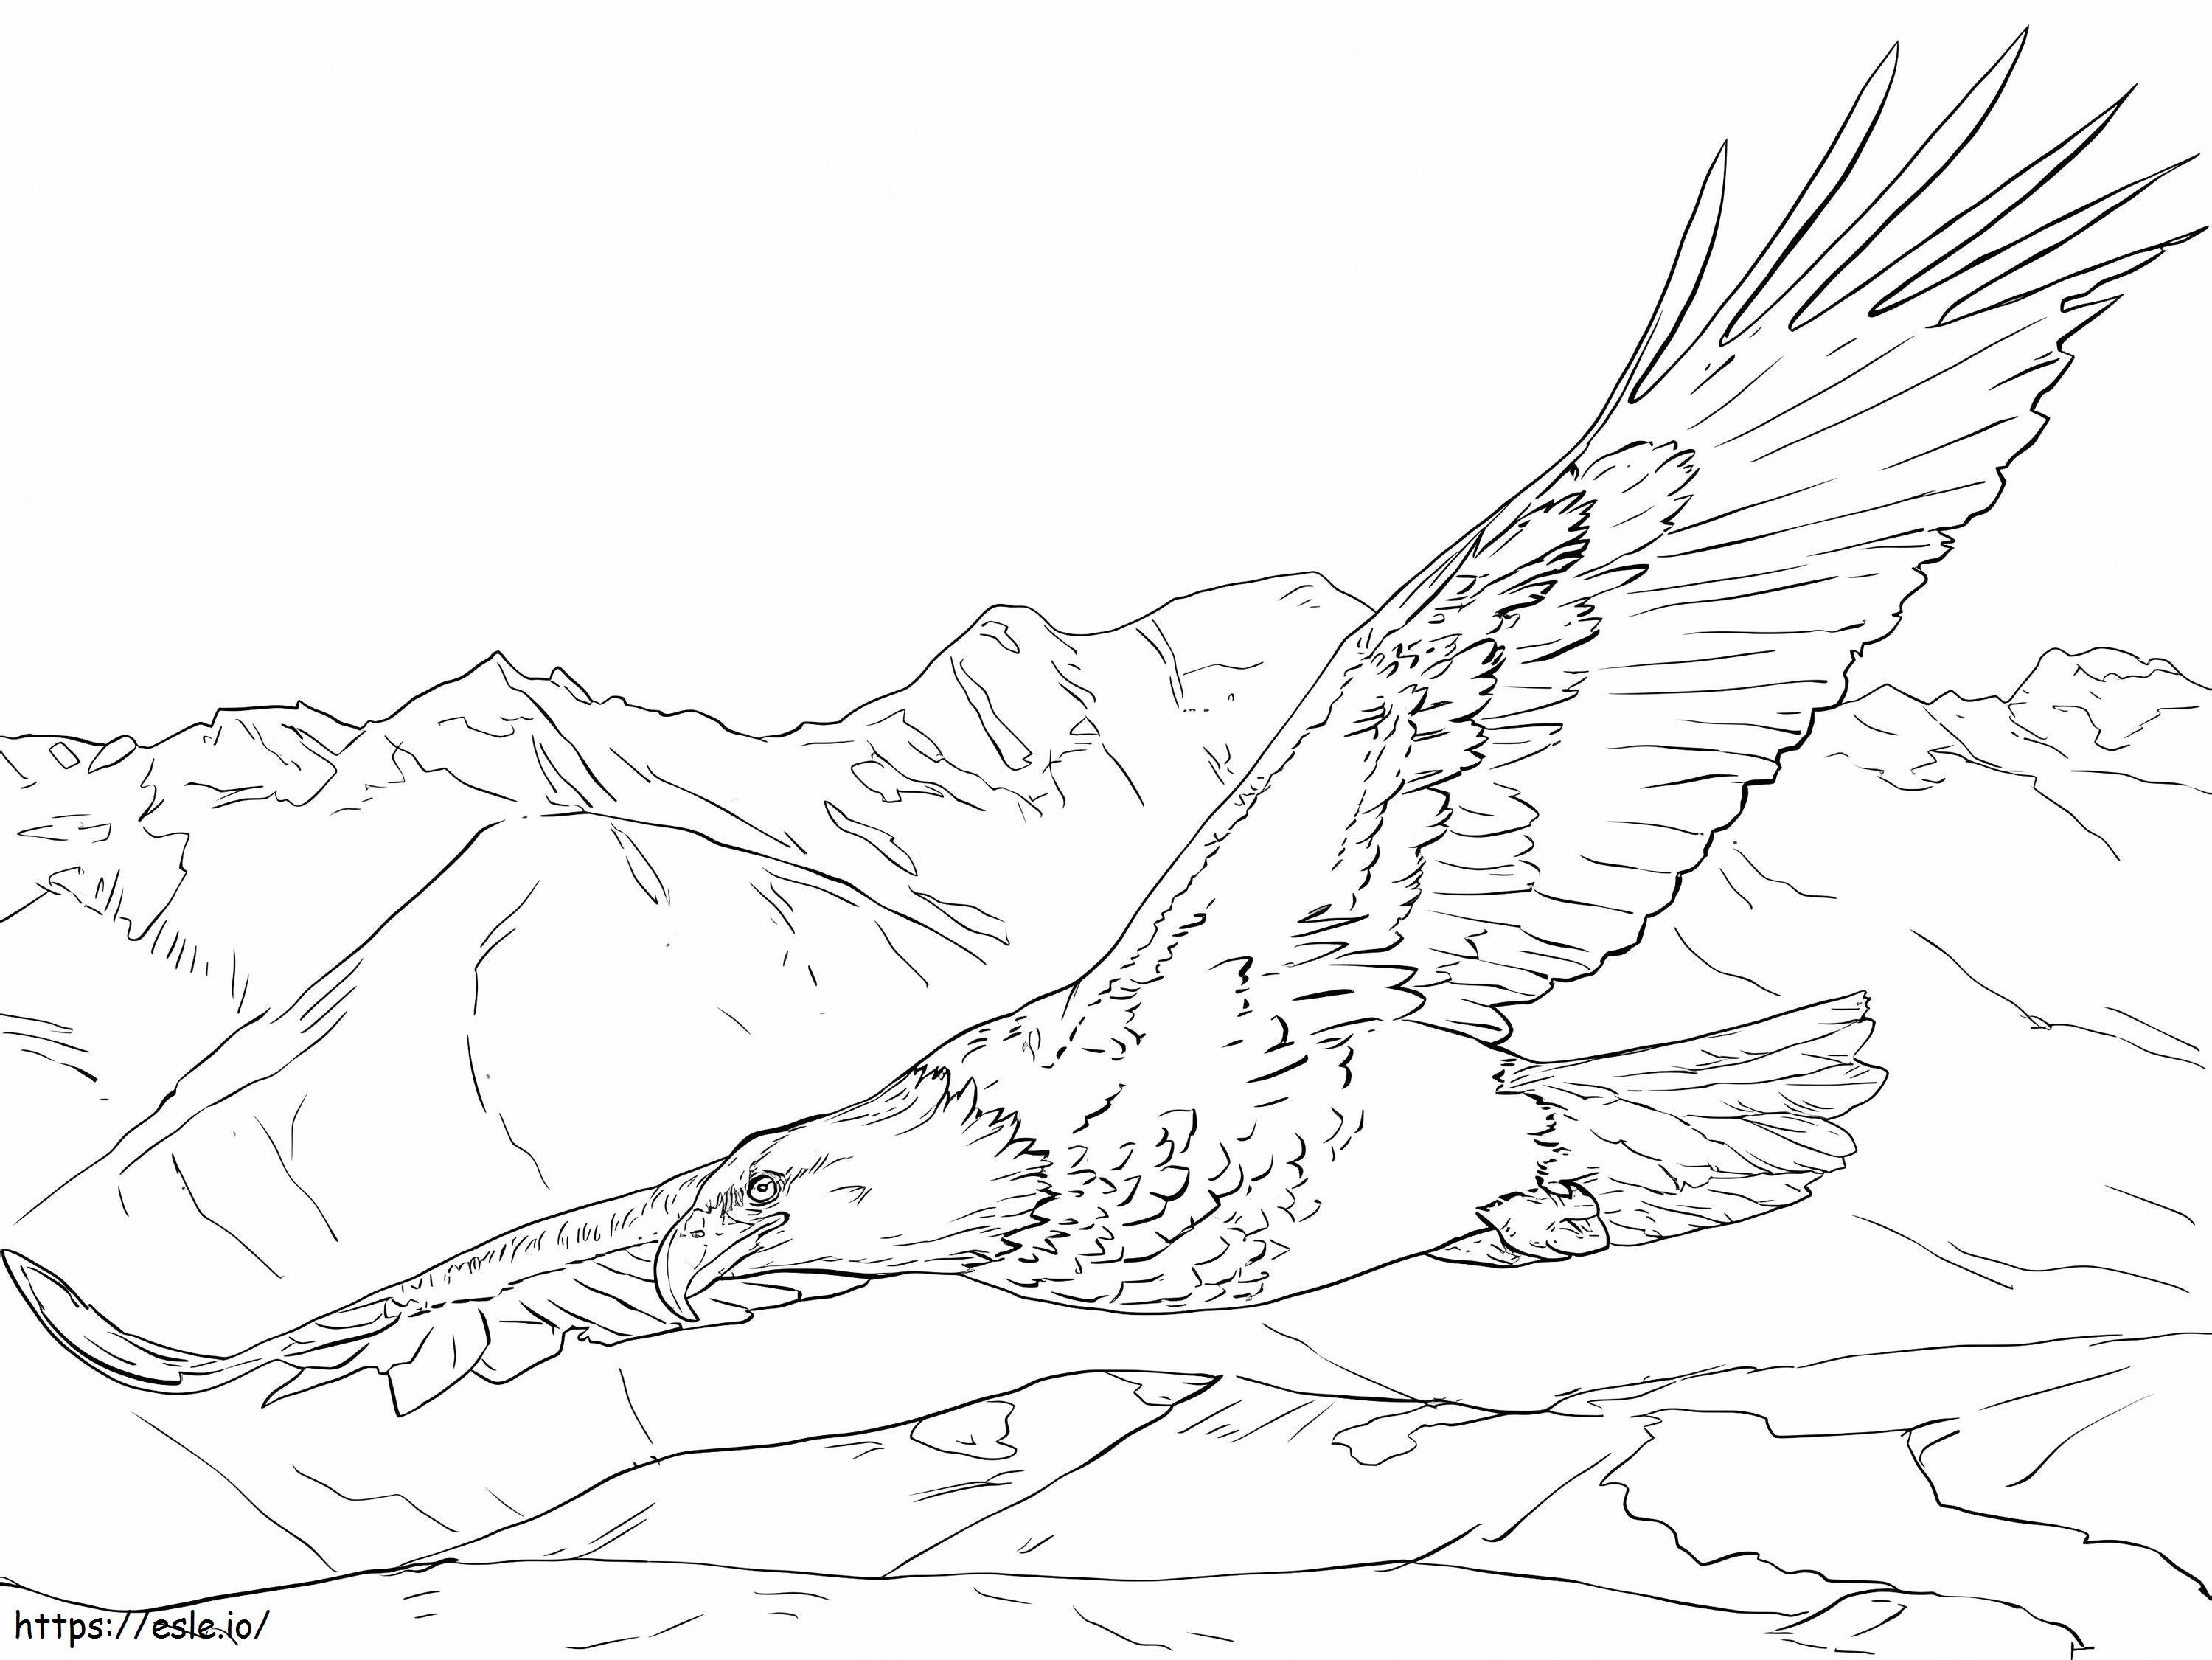 Aquila calva in volo da colorare